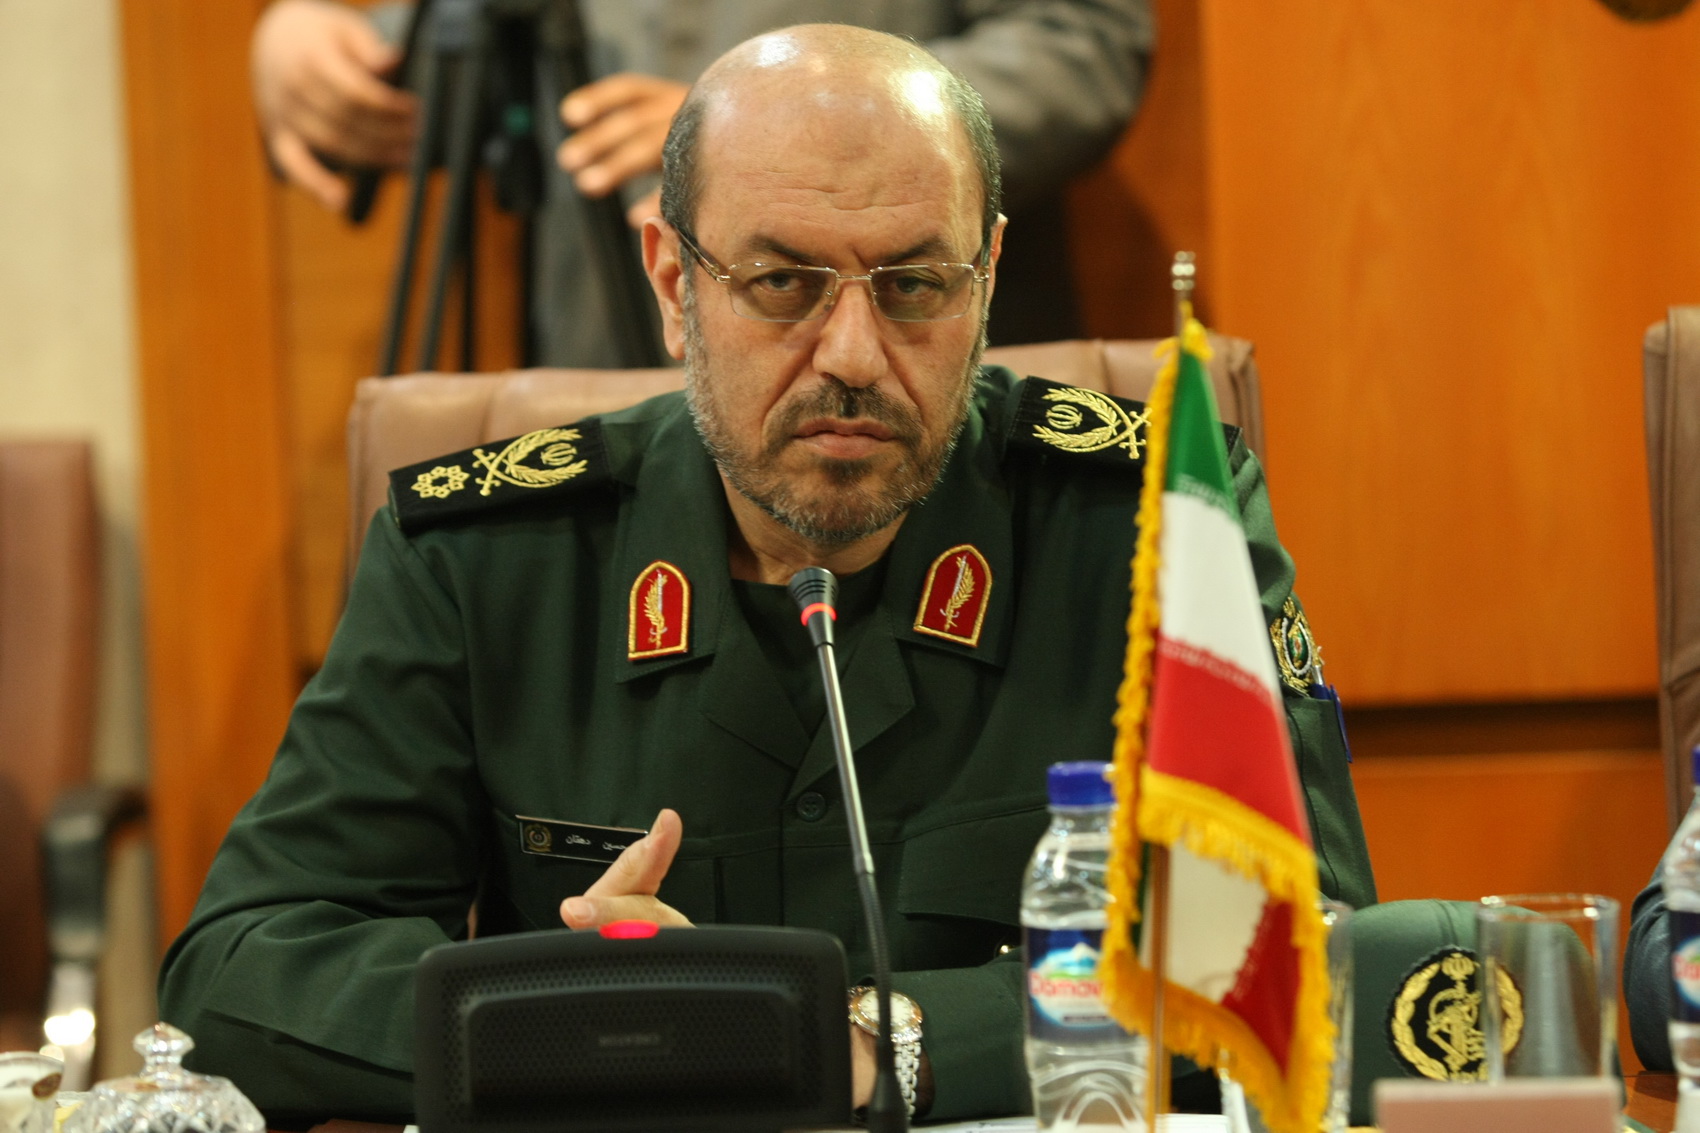 وزير الدفاع الايراني: أجرينا اختبار صاروخي مؤخراً، ولن نسمح لأي طرف أجنبي بالتدخل في أمورنا الدفاعية